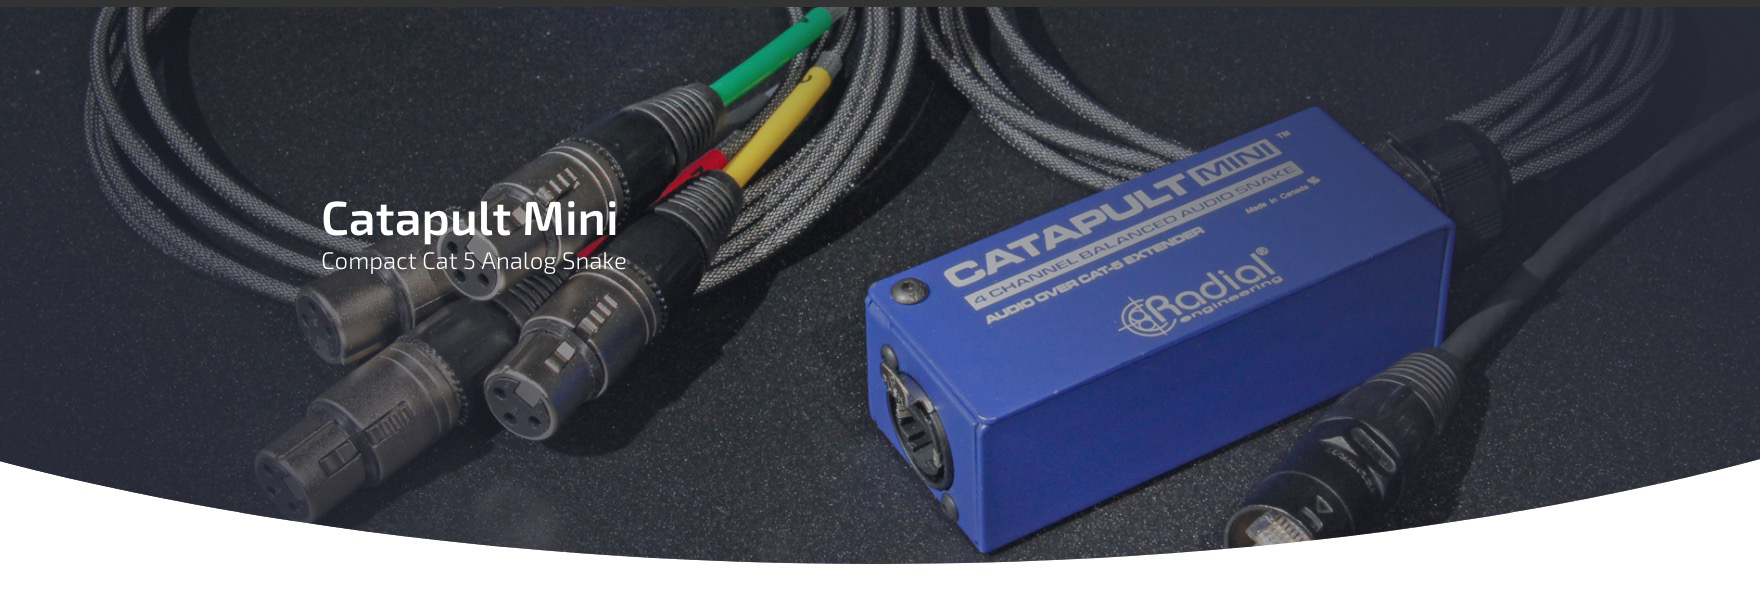 Catapult Mini RX di Radial Engineering è uno Snake audio compatto 4 canali che consente di inviare segnali audio analogici tramite cavo STP (Shielded Twisted Pair) standard Cat 5 o Cat 6.